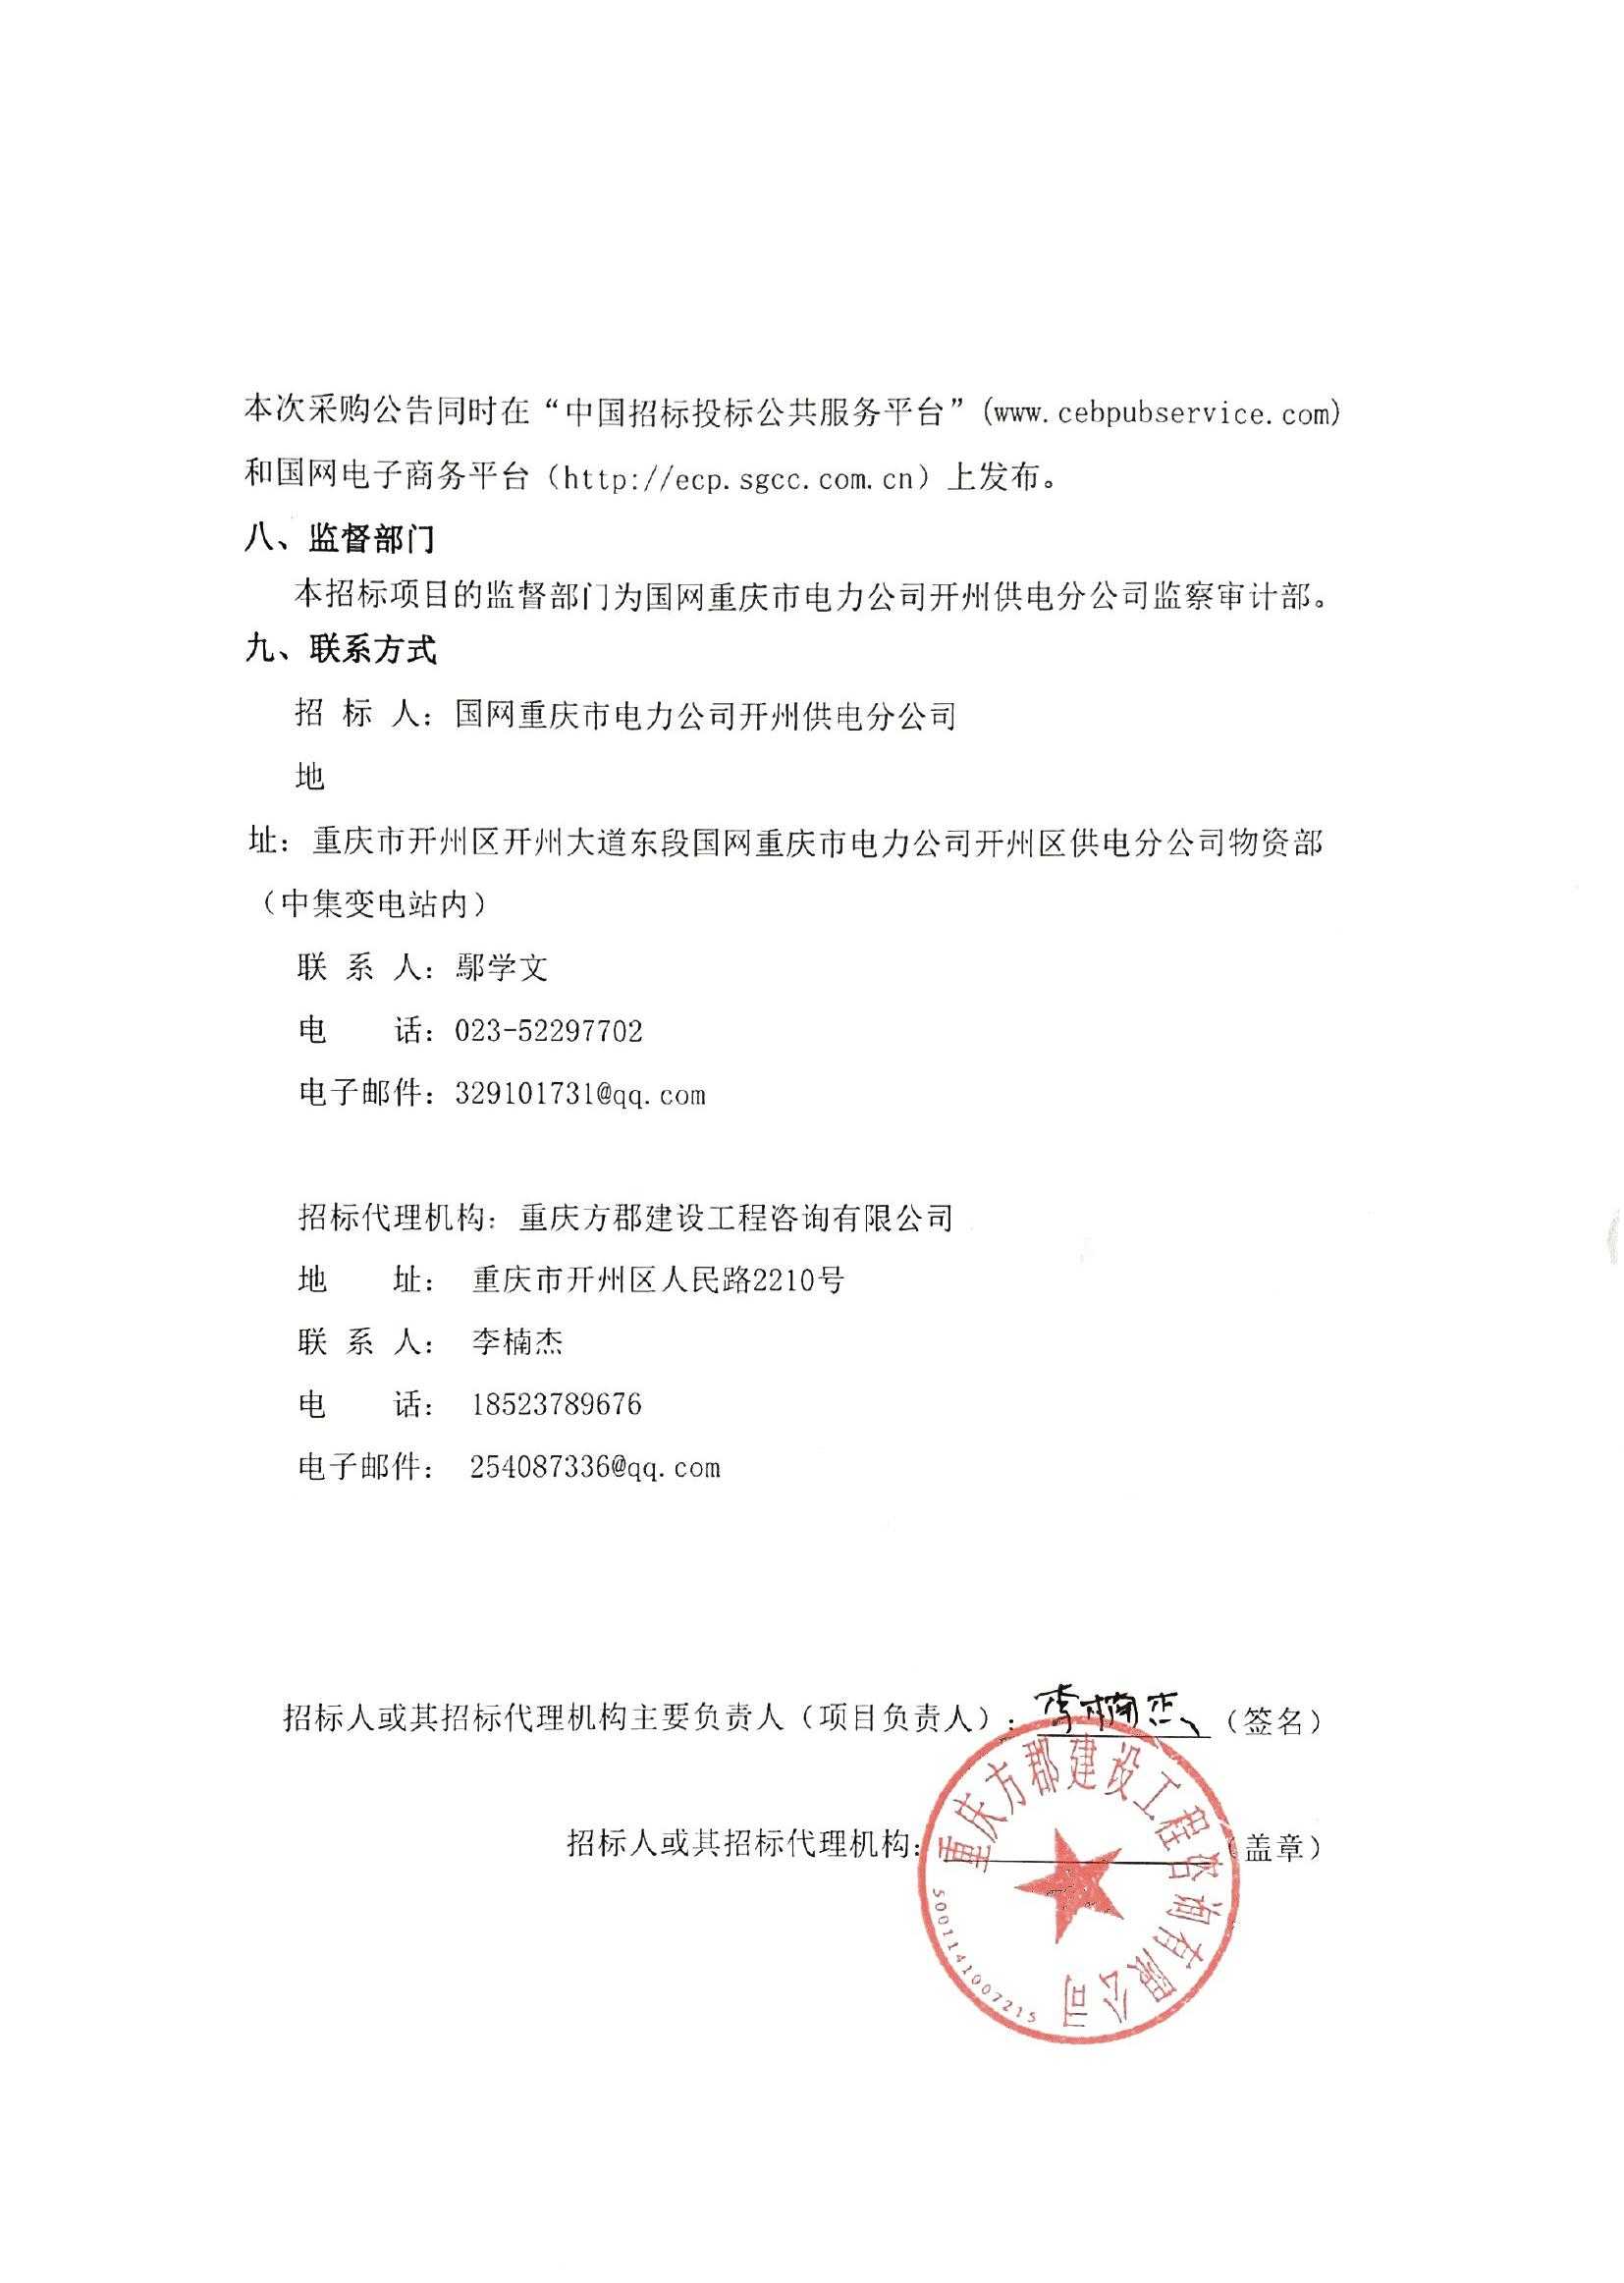 国网重庆市电力公司开州供电分公司2019年第16批授权采购项目公开竞争